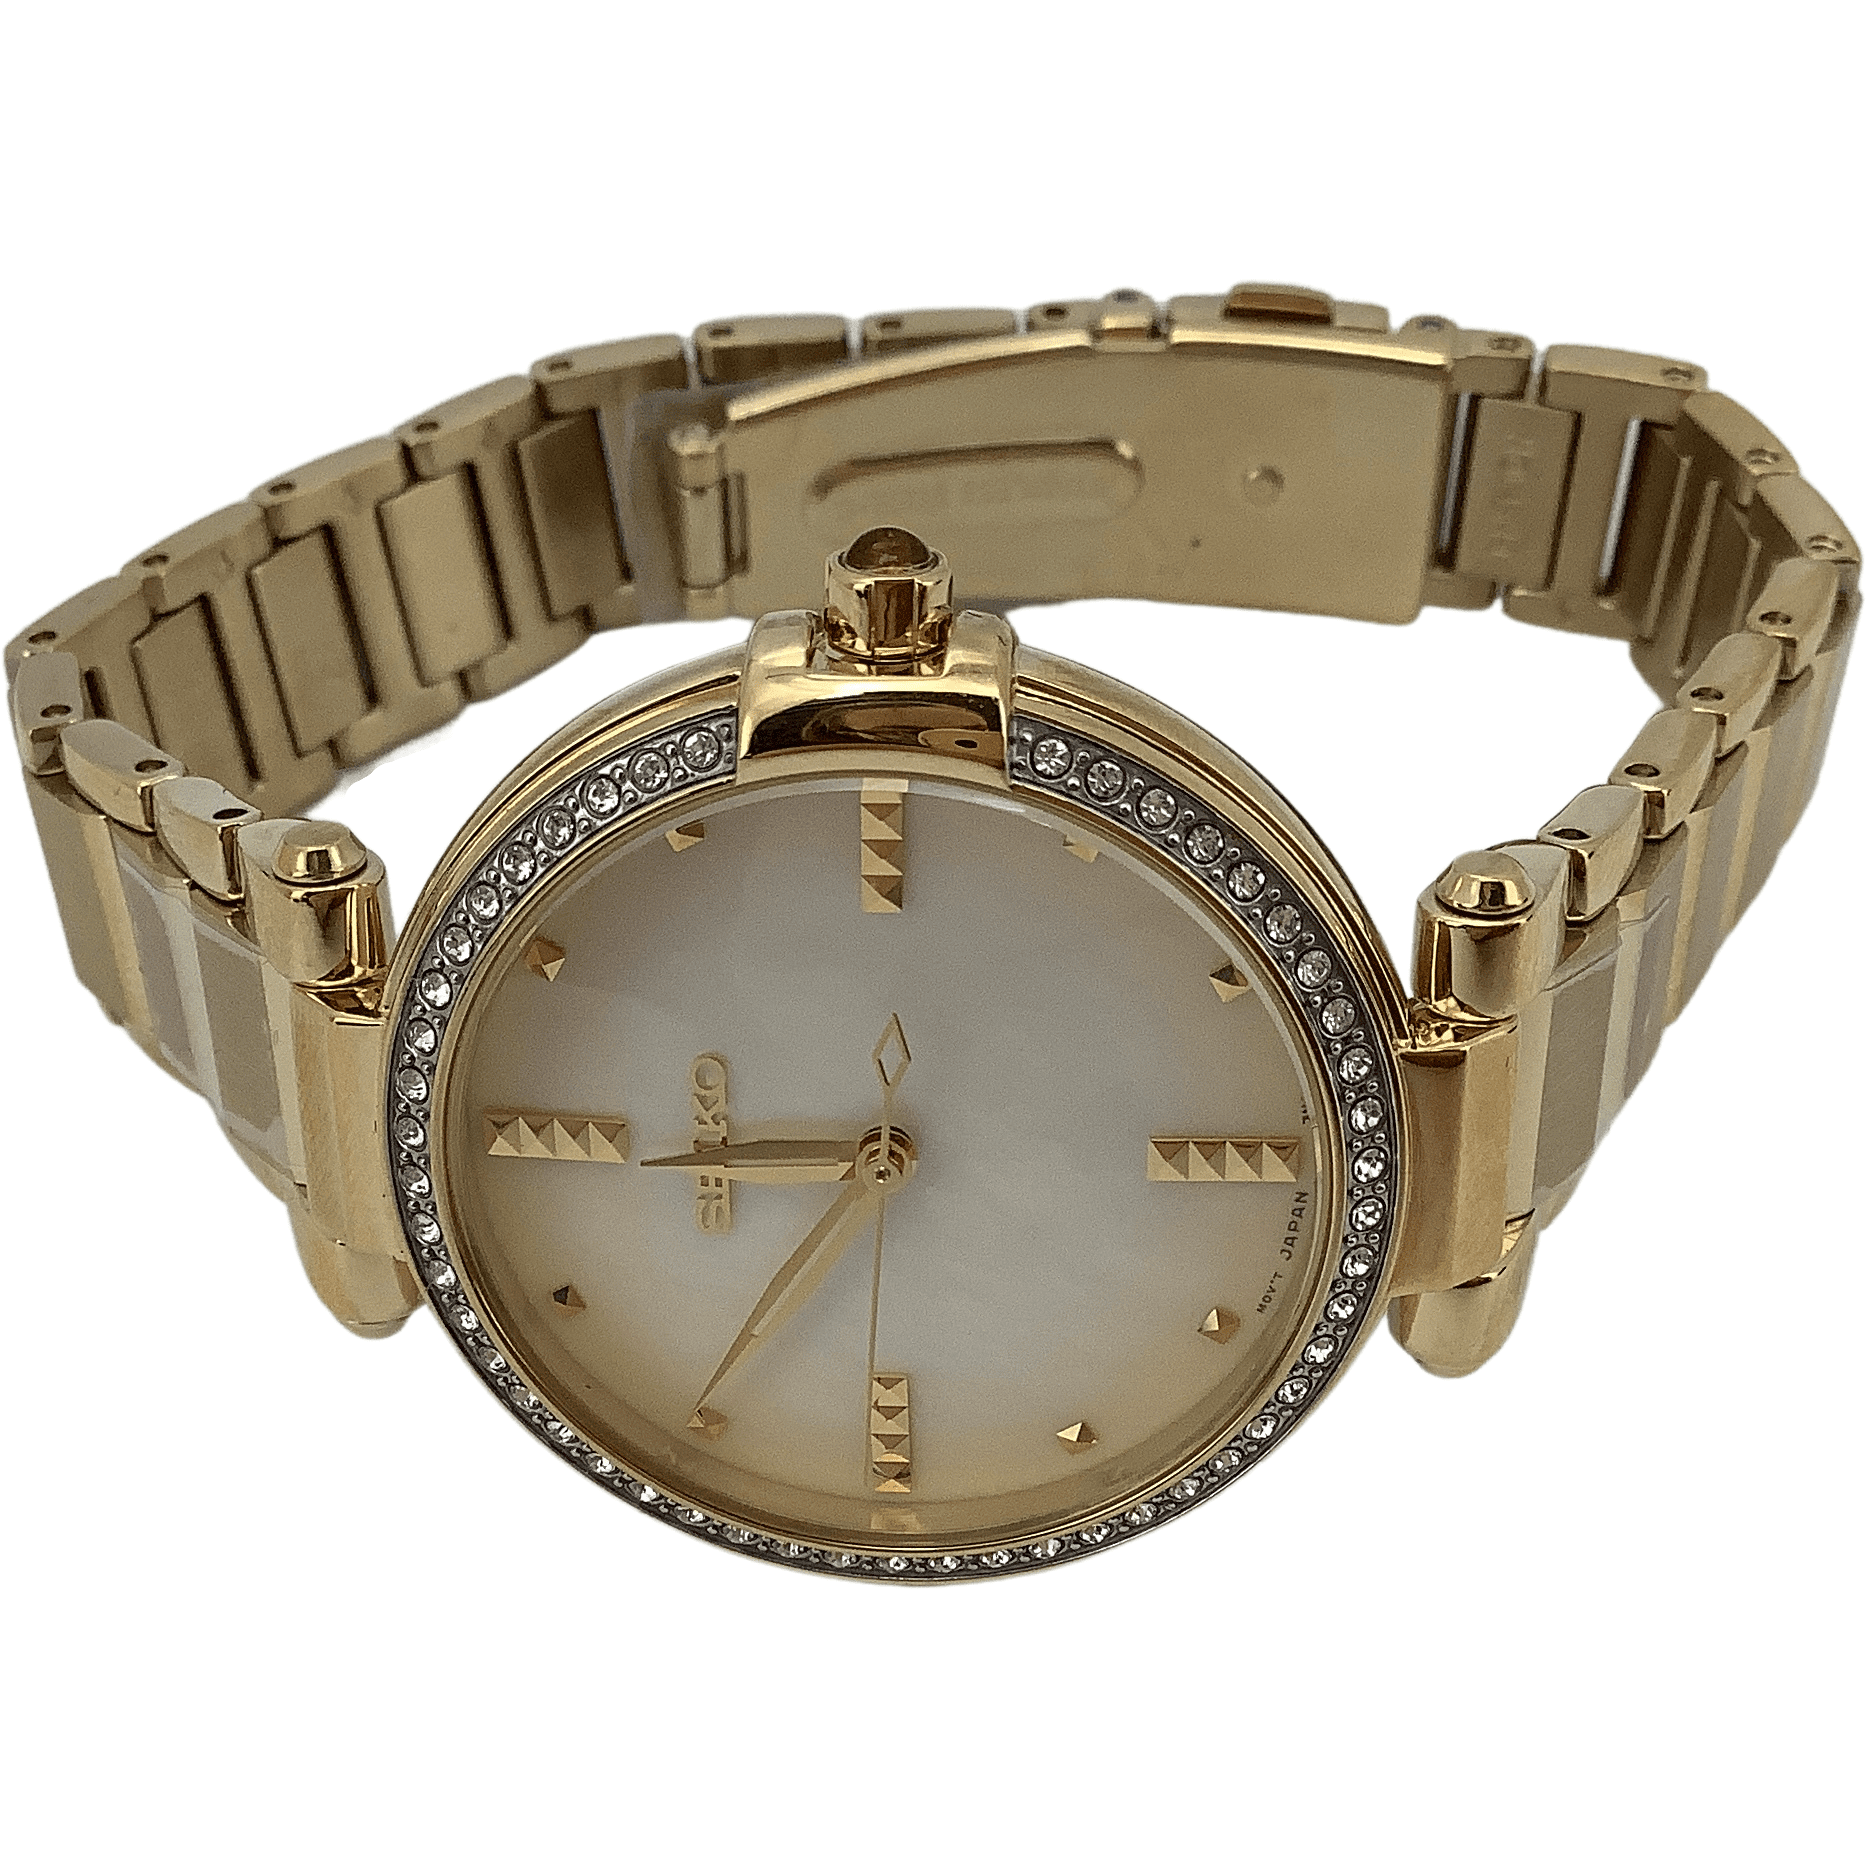 Seiko Women's Analog Wrist Watch / Gold / Curved Hadrlex Crystals / Women's Accessories